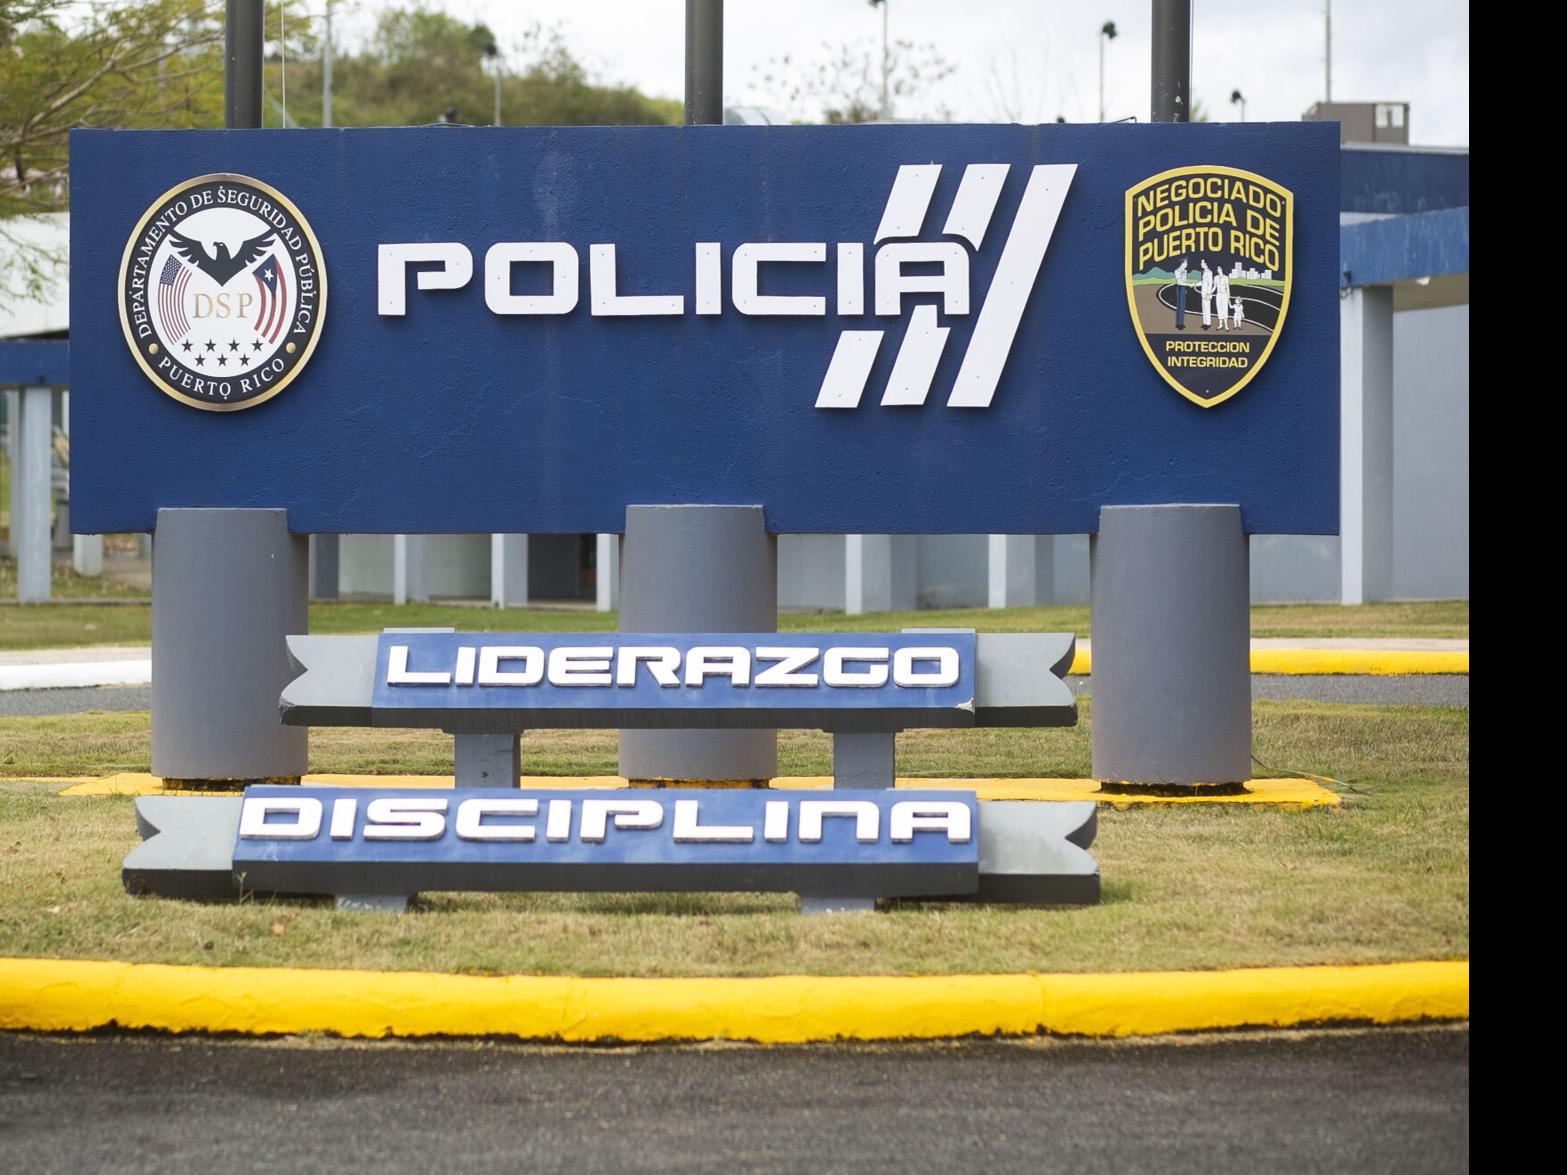 Policías de Costa Rica - USO CORRECTO DE LAS LUCES POLICIALES